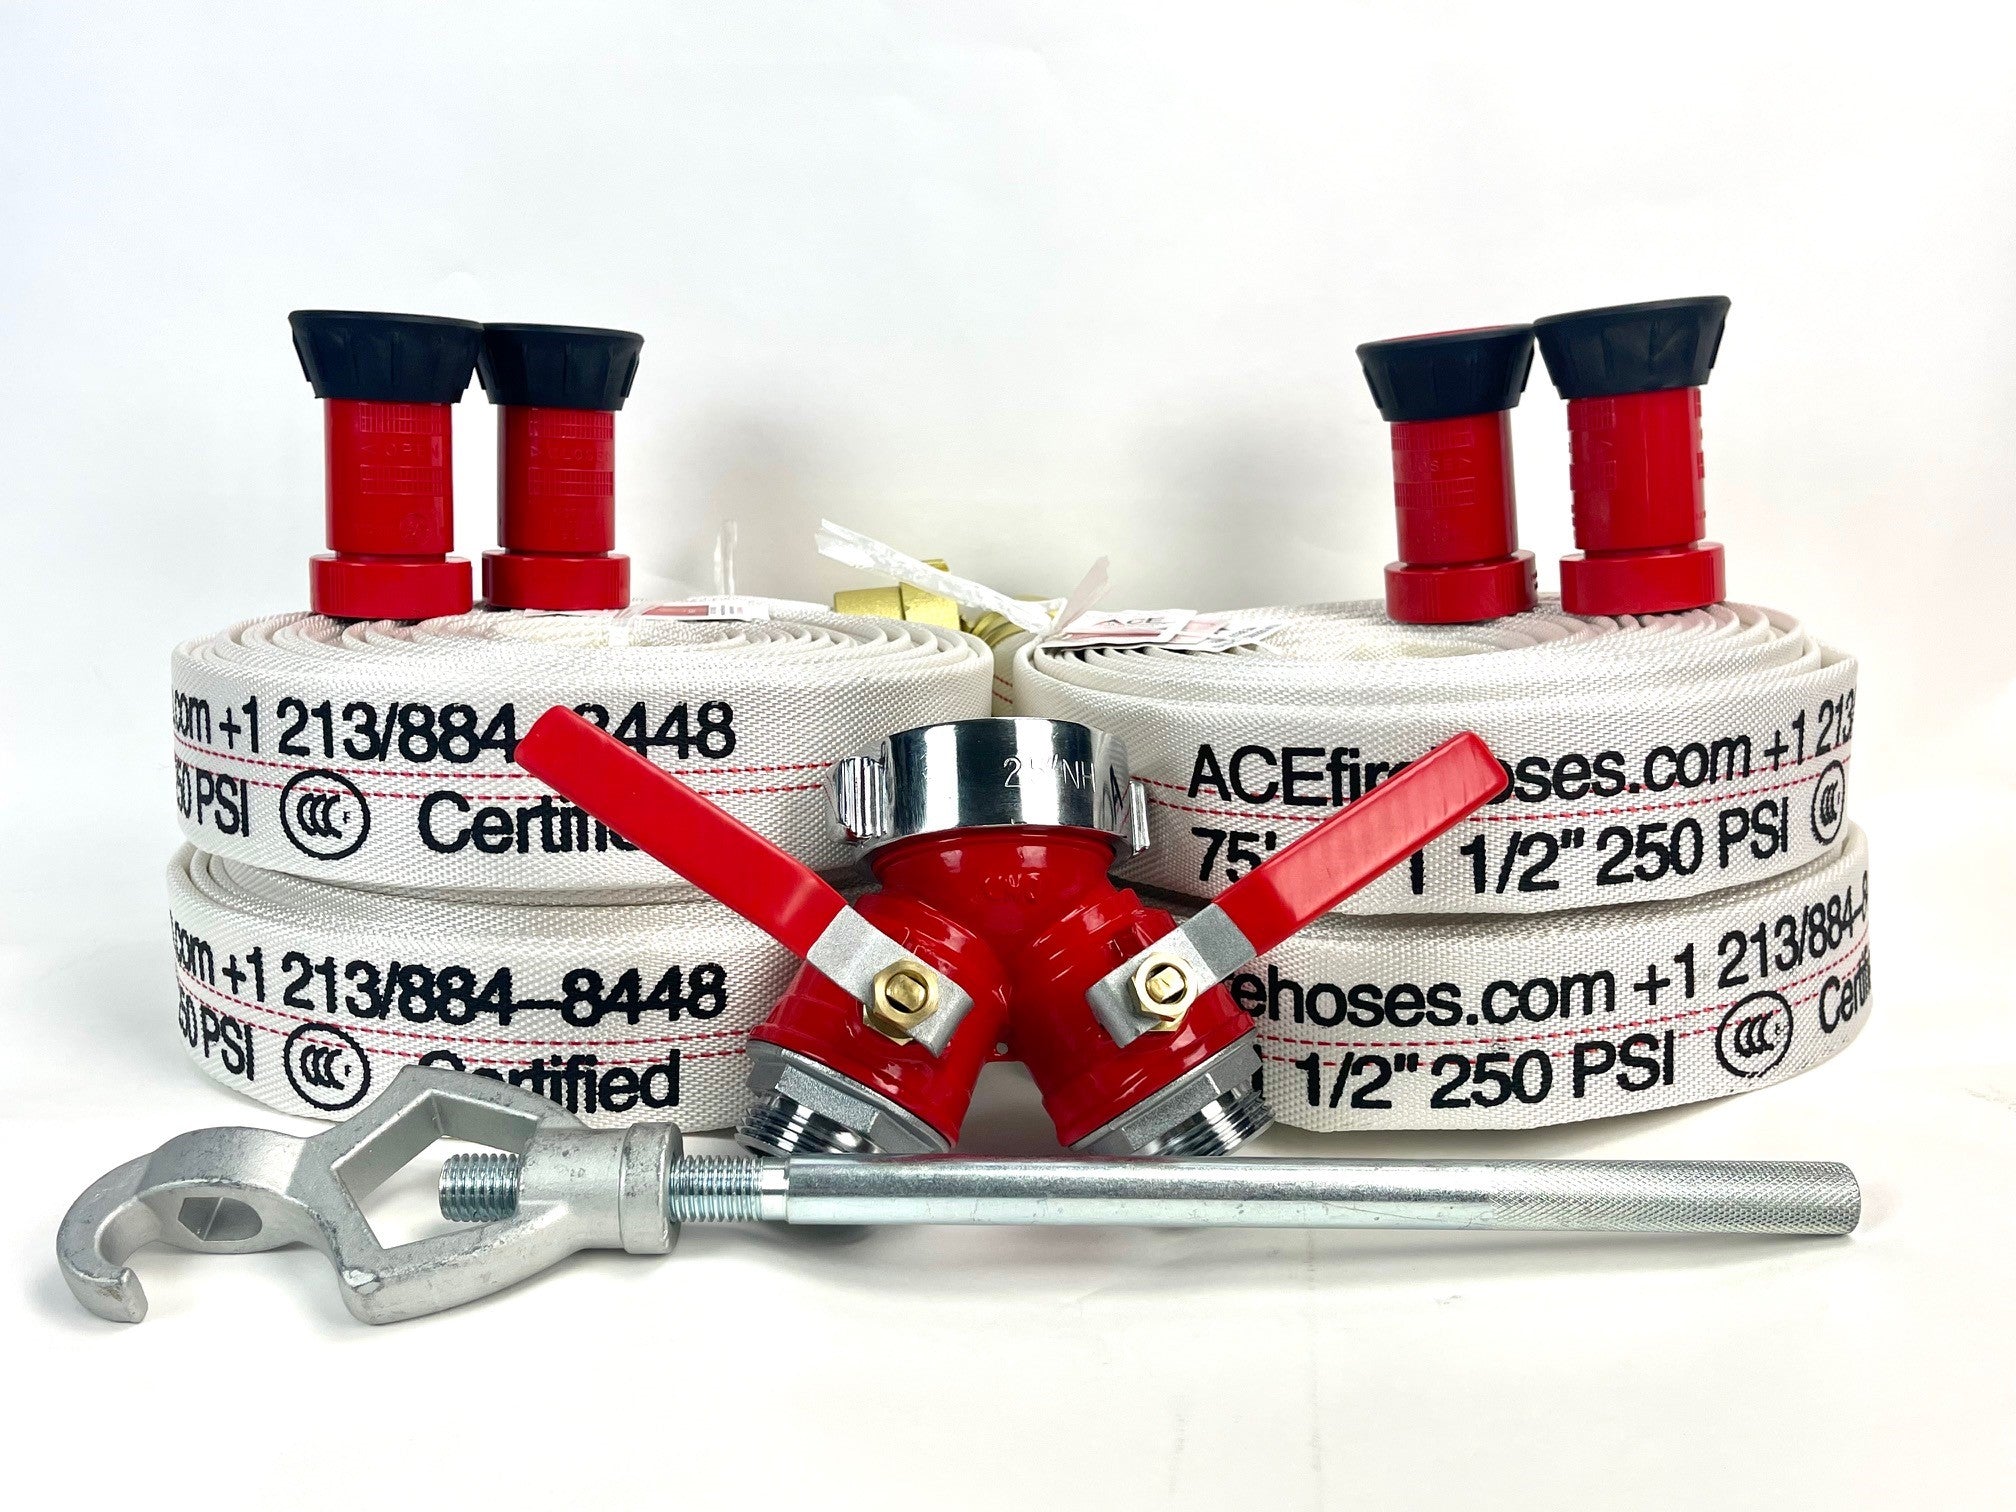 Fire-Safe Home Bundle Package 4 75' x 1.5 hoses, 4 nozzles, valve, wr –  Ace Fire Preparedness Defense